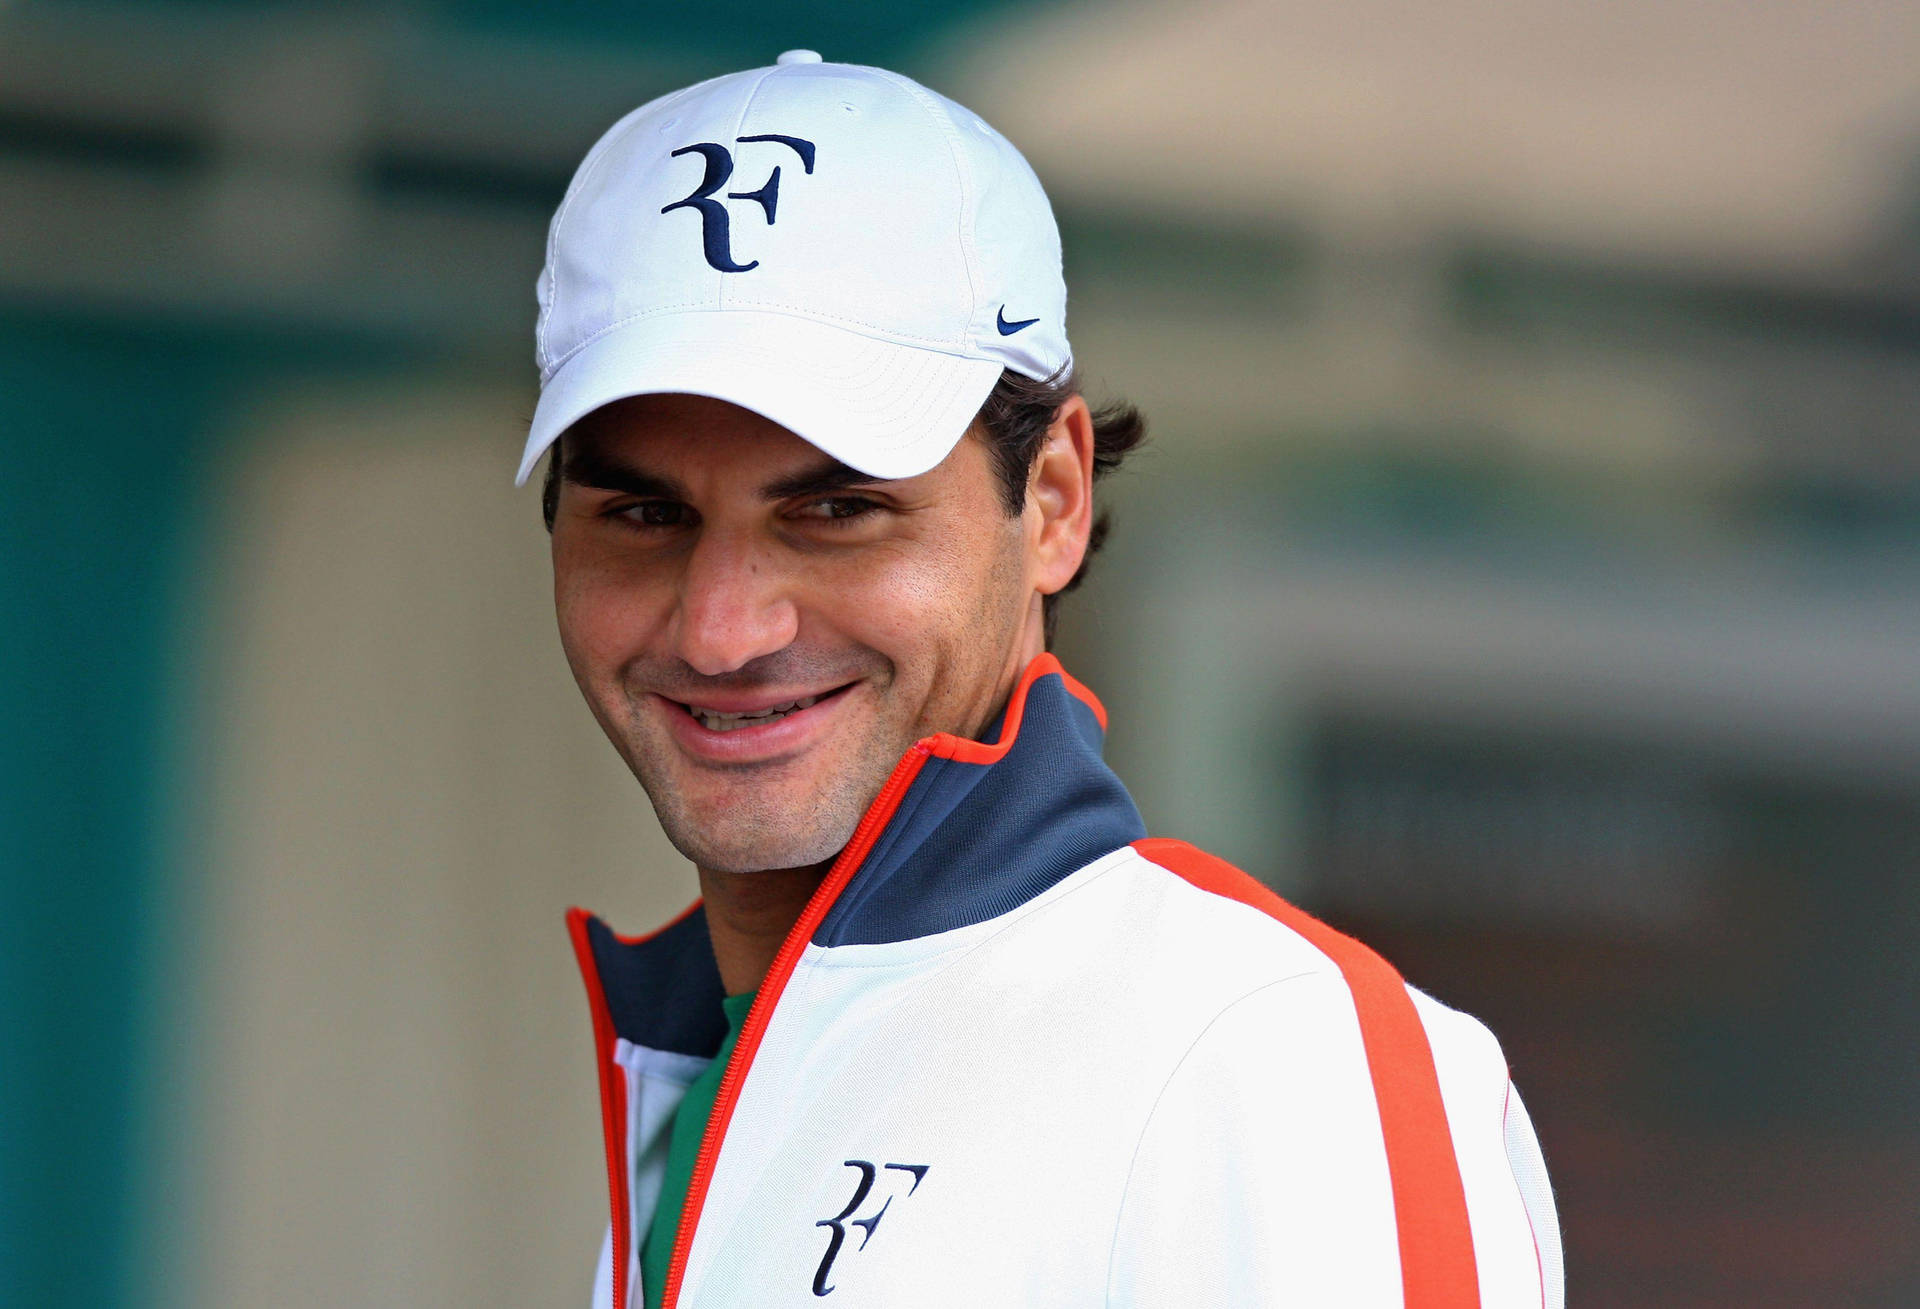 Roger Federer Sporting Nike Merchandise